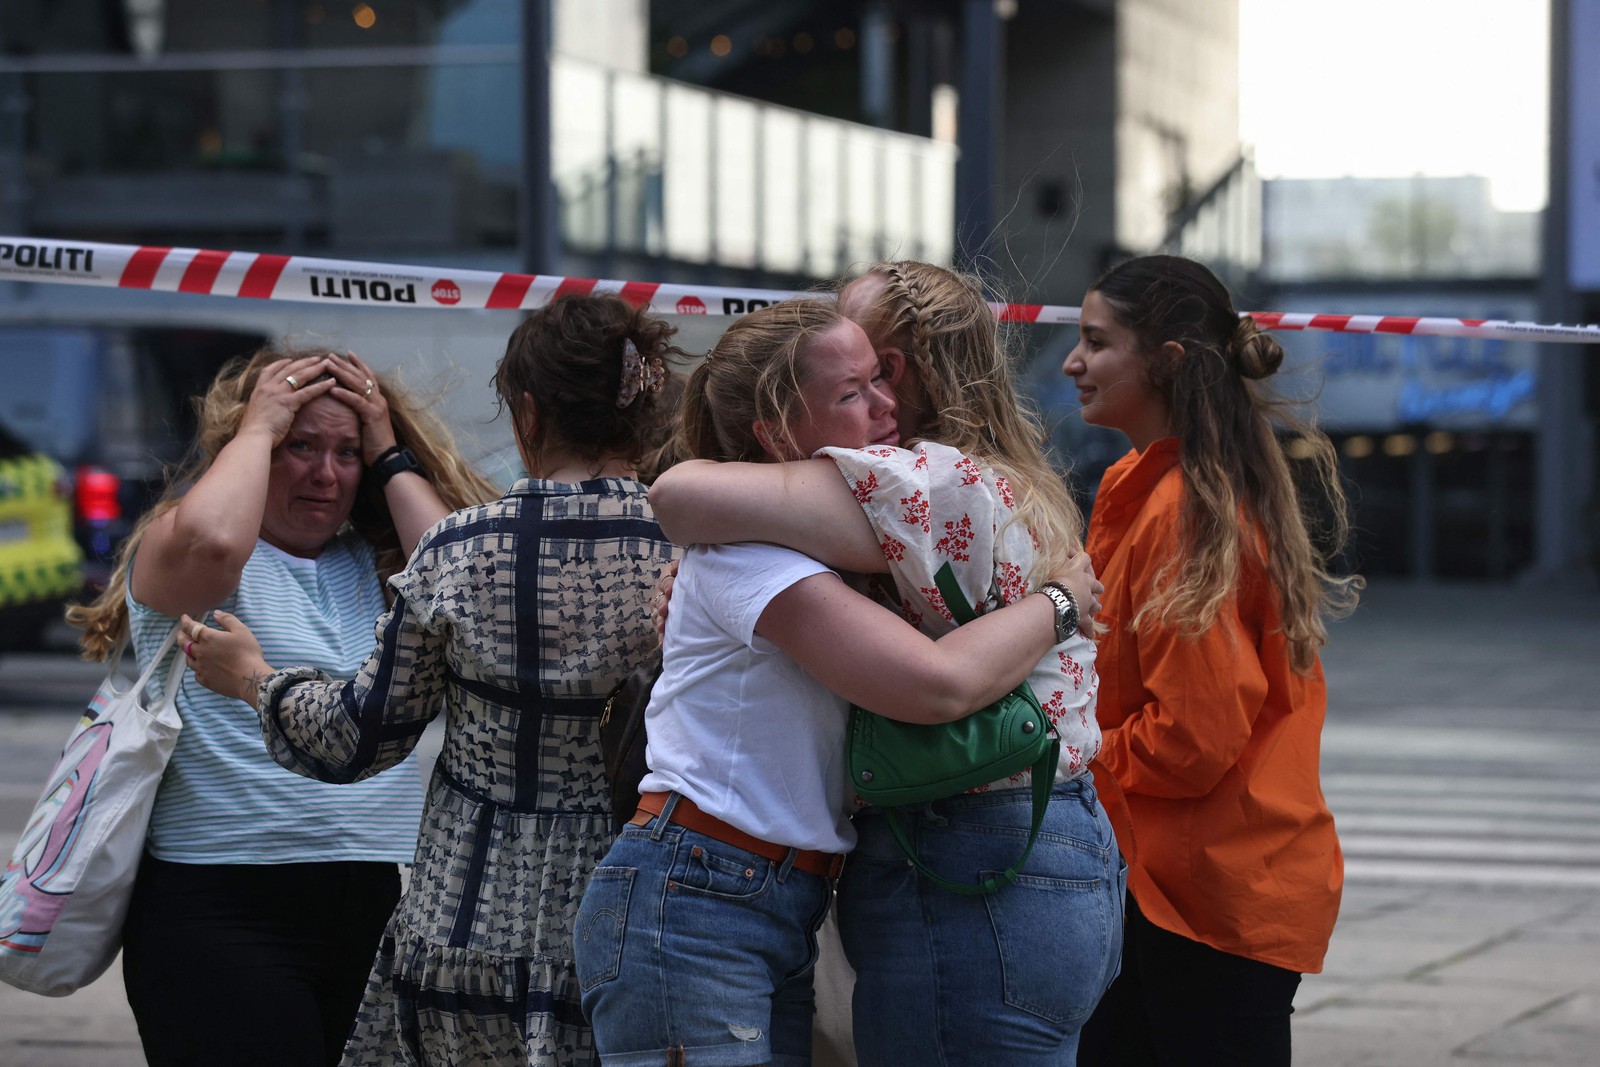 Pessoas conseguiram escapar do tiroteio no shopping se abraçam do lado de fora enquanto a polícia evacua a área  — Foto: Olafur Steinar Gestsson / Ritzau Scanpix / AFP